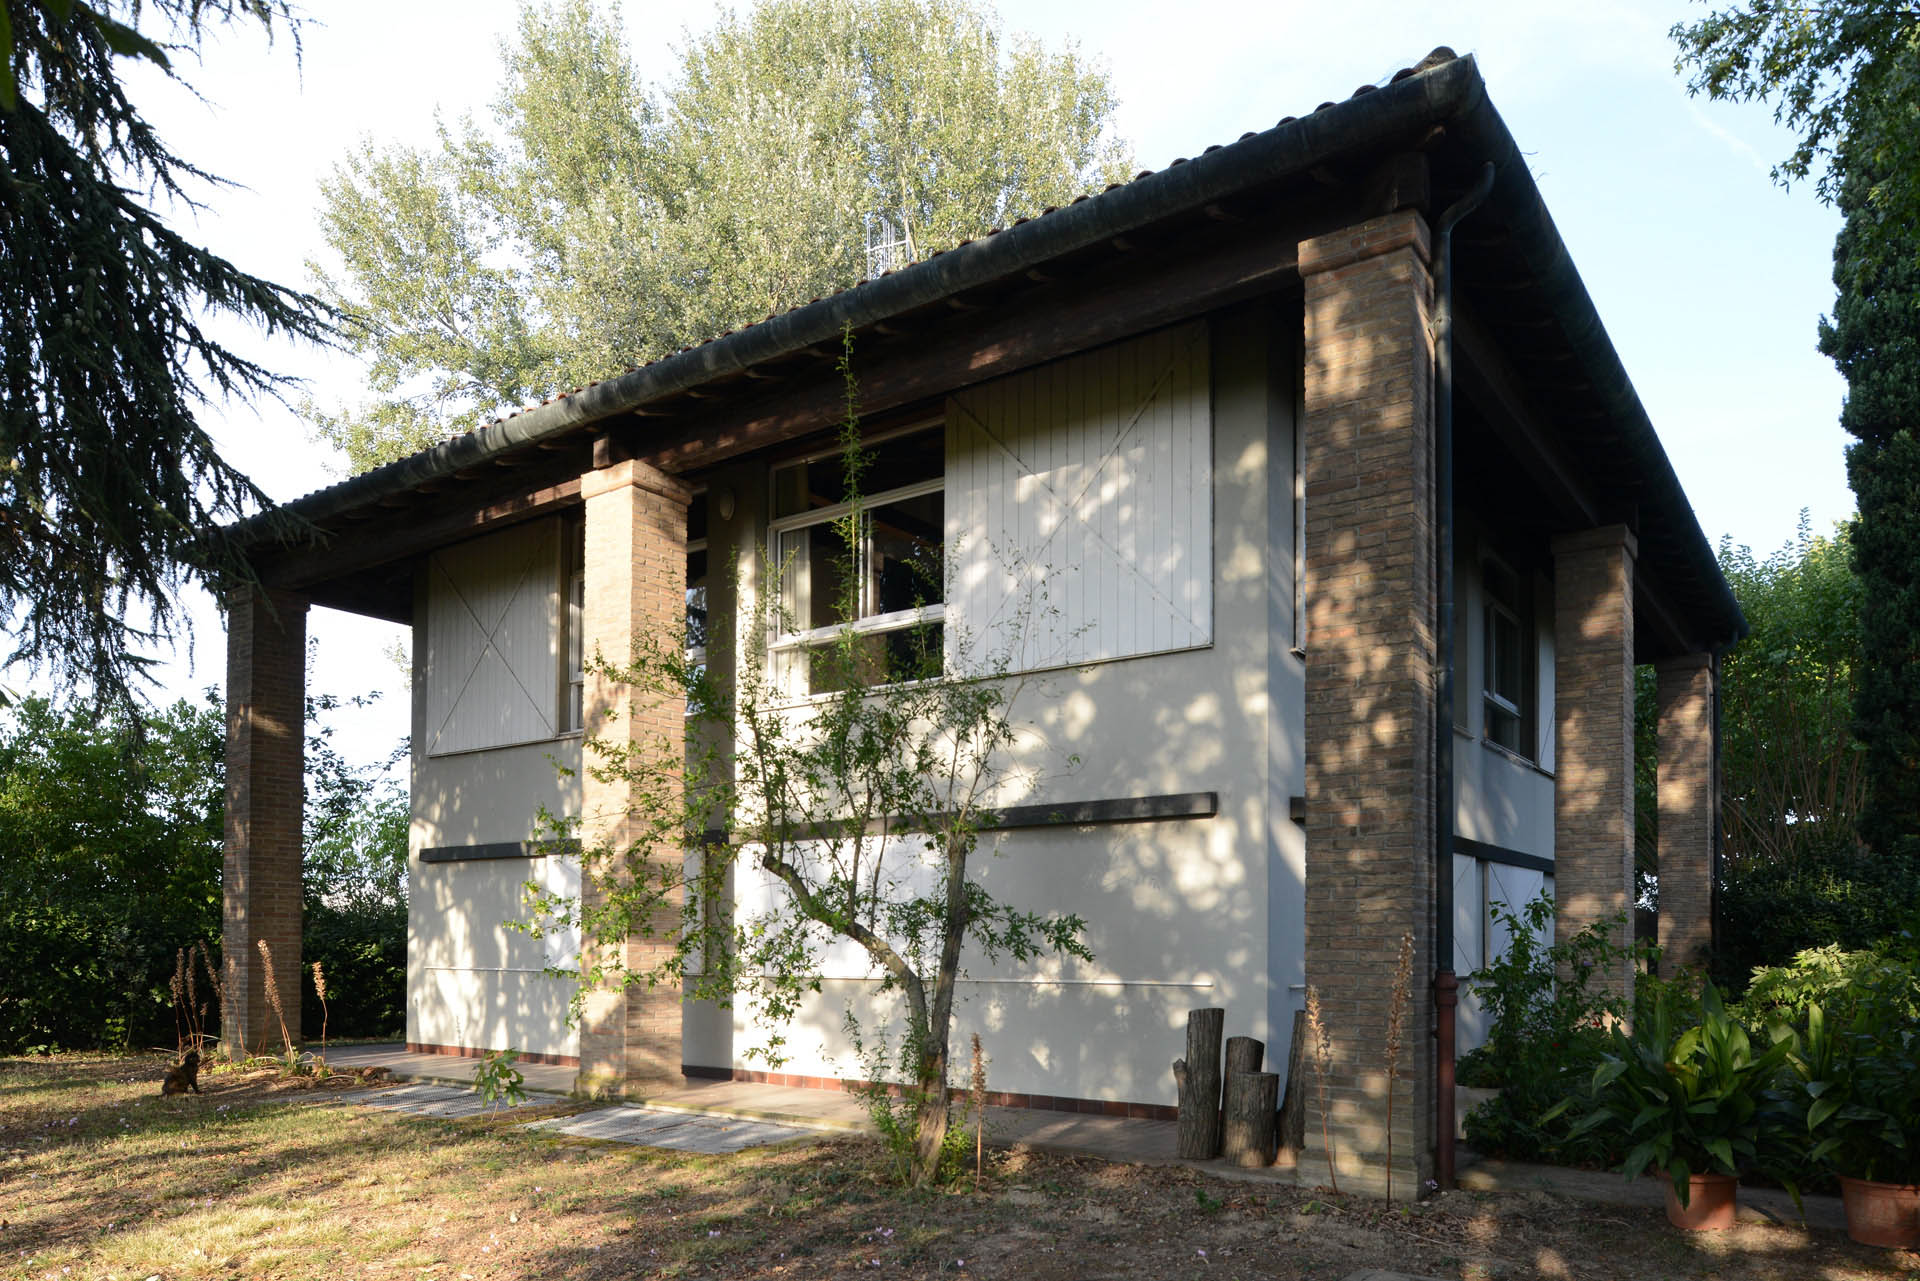 03 Studio Bacchi architetti associati Villa in campagna img 03